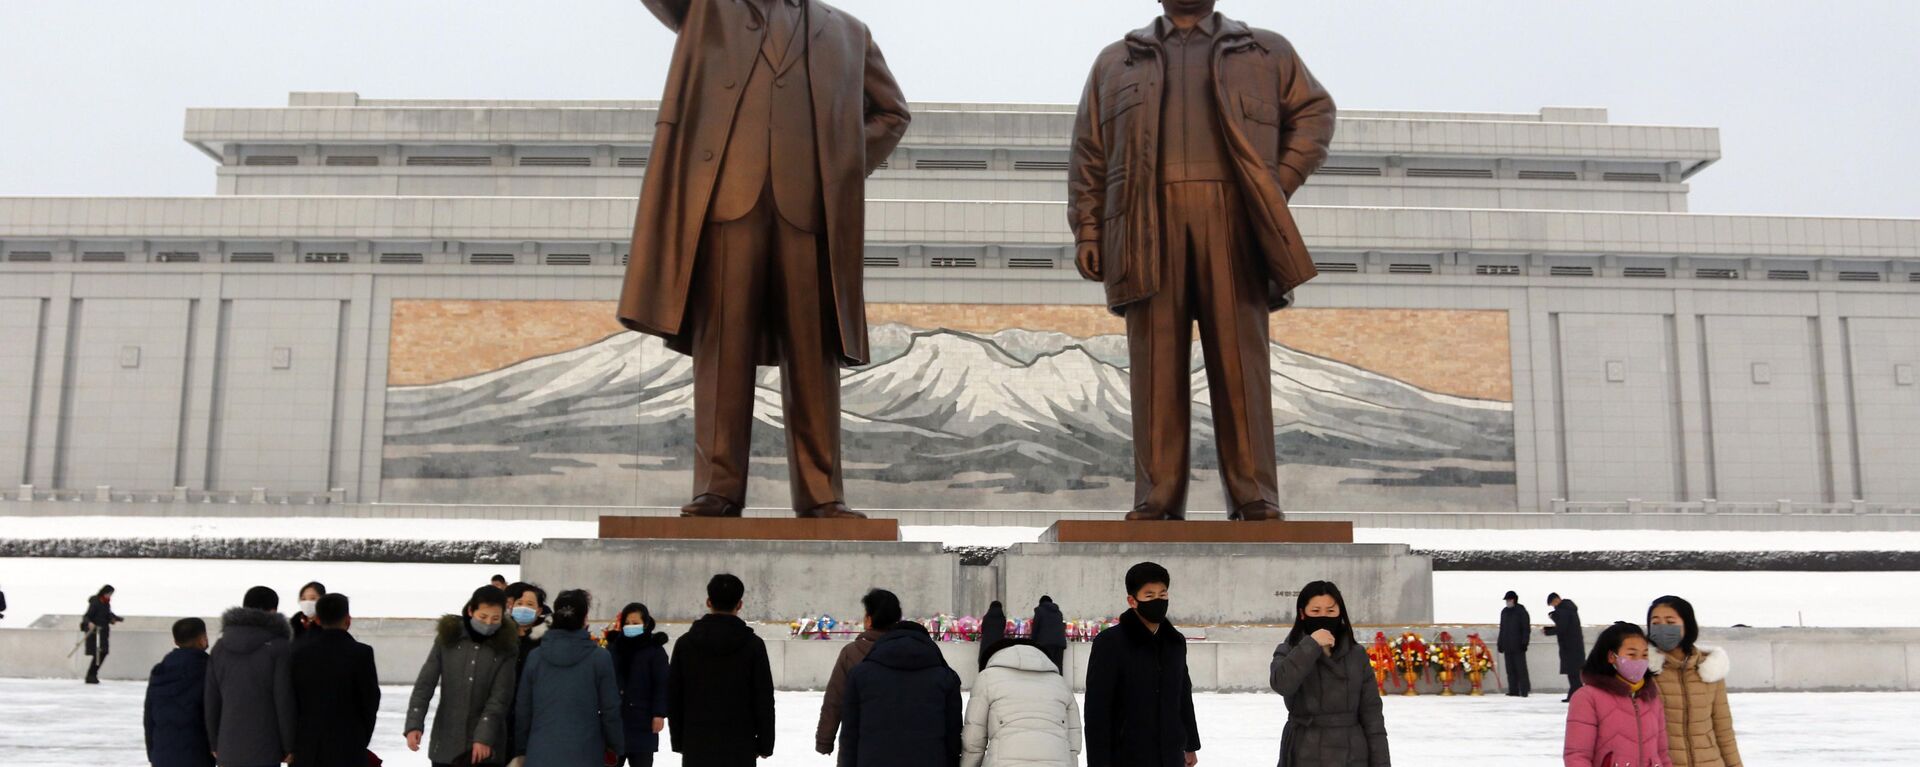 يزور الناس النصب التذكاري للقادة الكوريين الشماليين السابقين (كيم إيل سونغ، وكيم جونغ إيل في مانسو هيل في بيونغ يانغ)، بمناسبة عطلة رأس السنة القمرية الجديدة، كوريا الشمالية 1 فبراير 2022. - سبوتنيك عربي, 1920, 09.02.2022